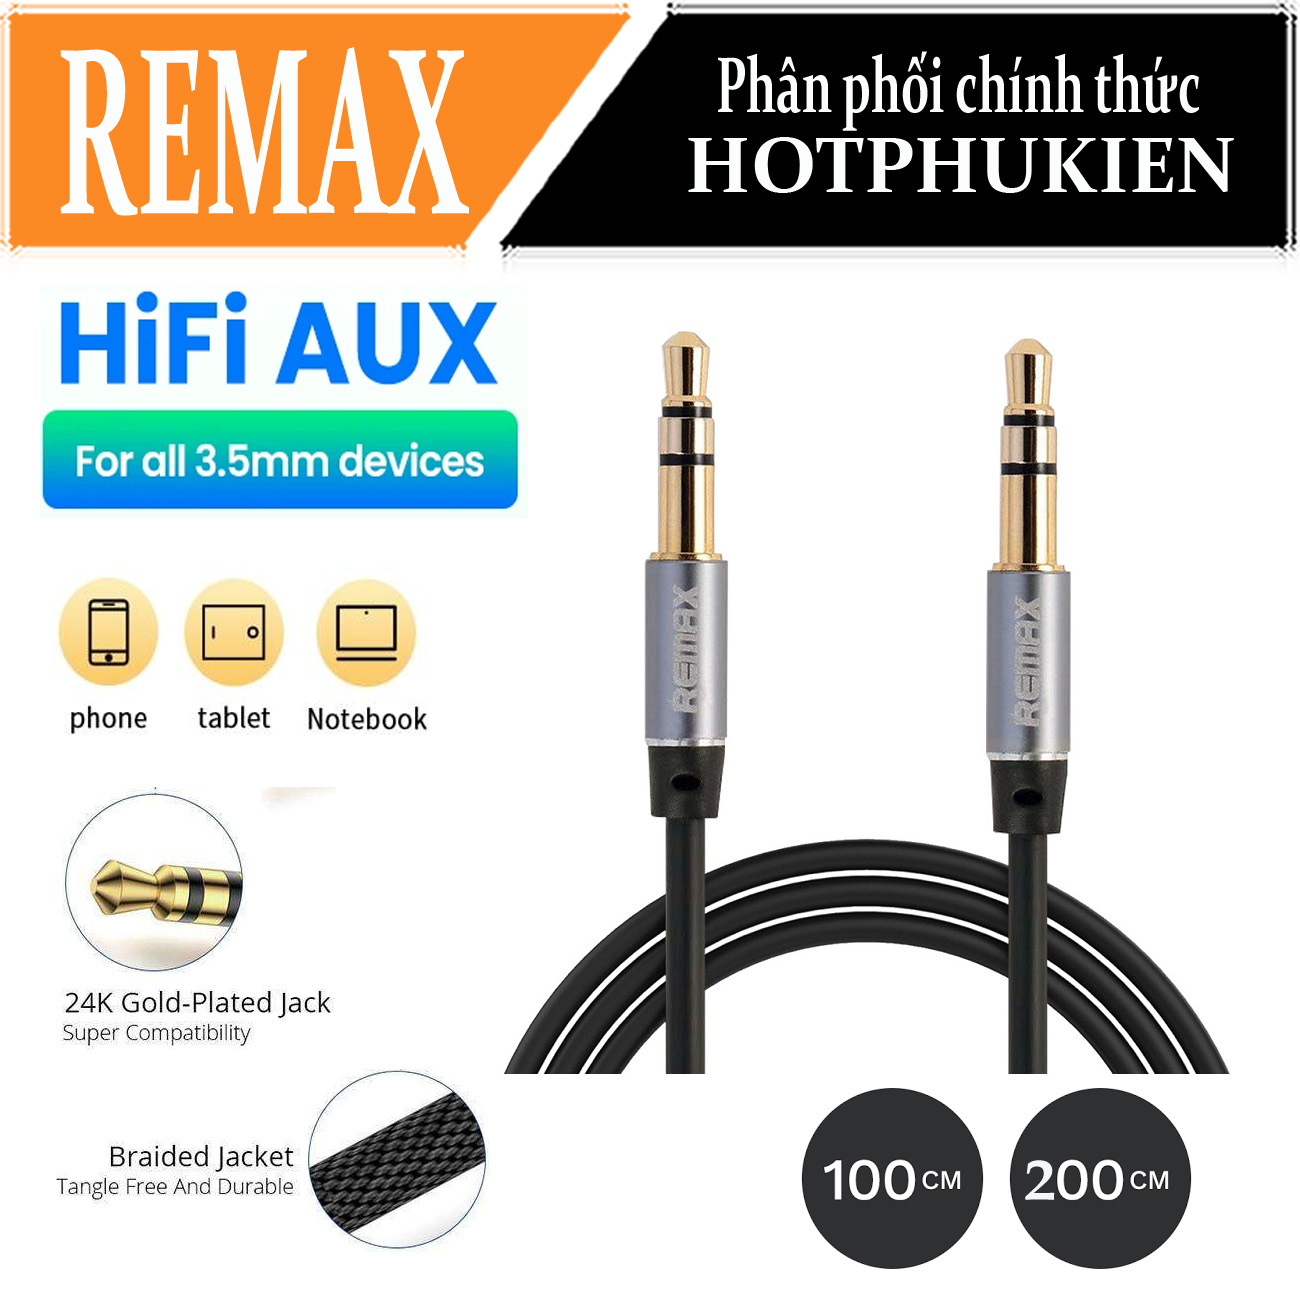 (200 cm) Dây cáp âm thanh Hifi AUX 3.5mm Audio hiệu Remax RL-L200 truyền tải âm thanh chất lượng cao đầu cáp mạ vàng, công nghệ chống đứt gãy (giao màu ngẫu nhiên) (bảo hành 3 tháng 1 đổi 1)